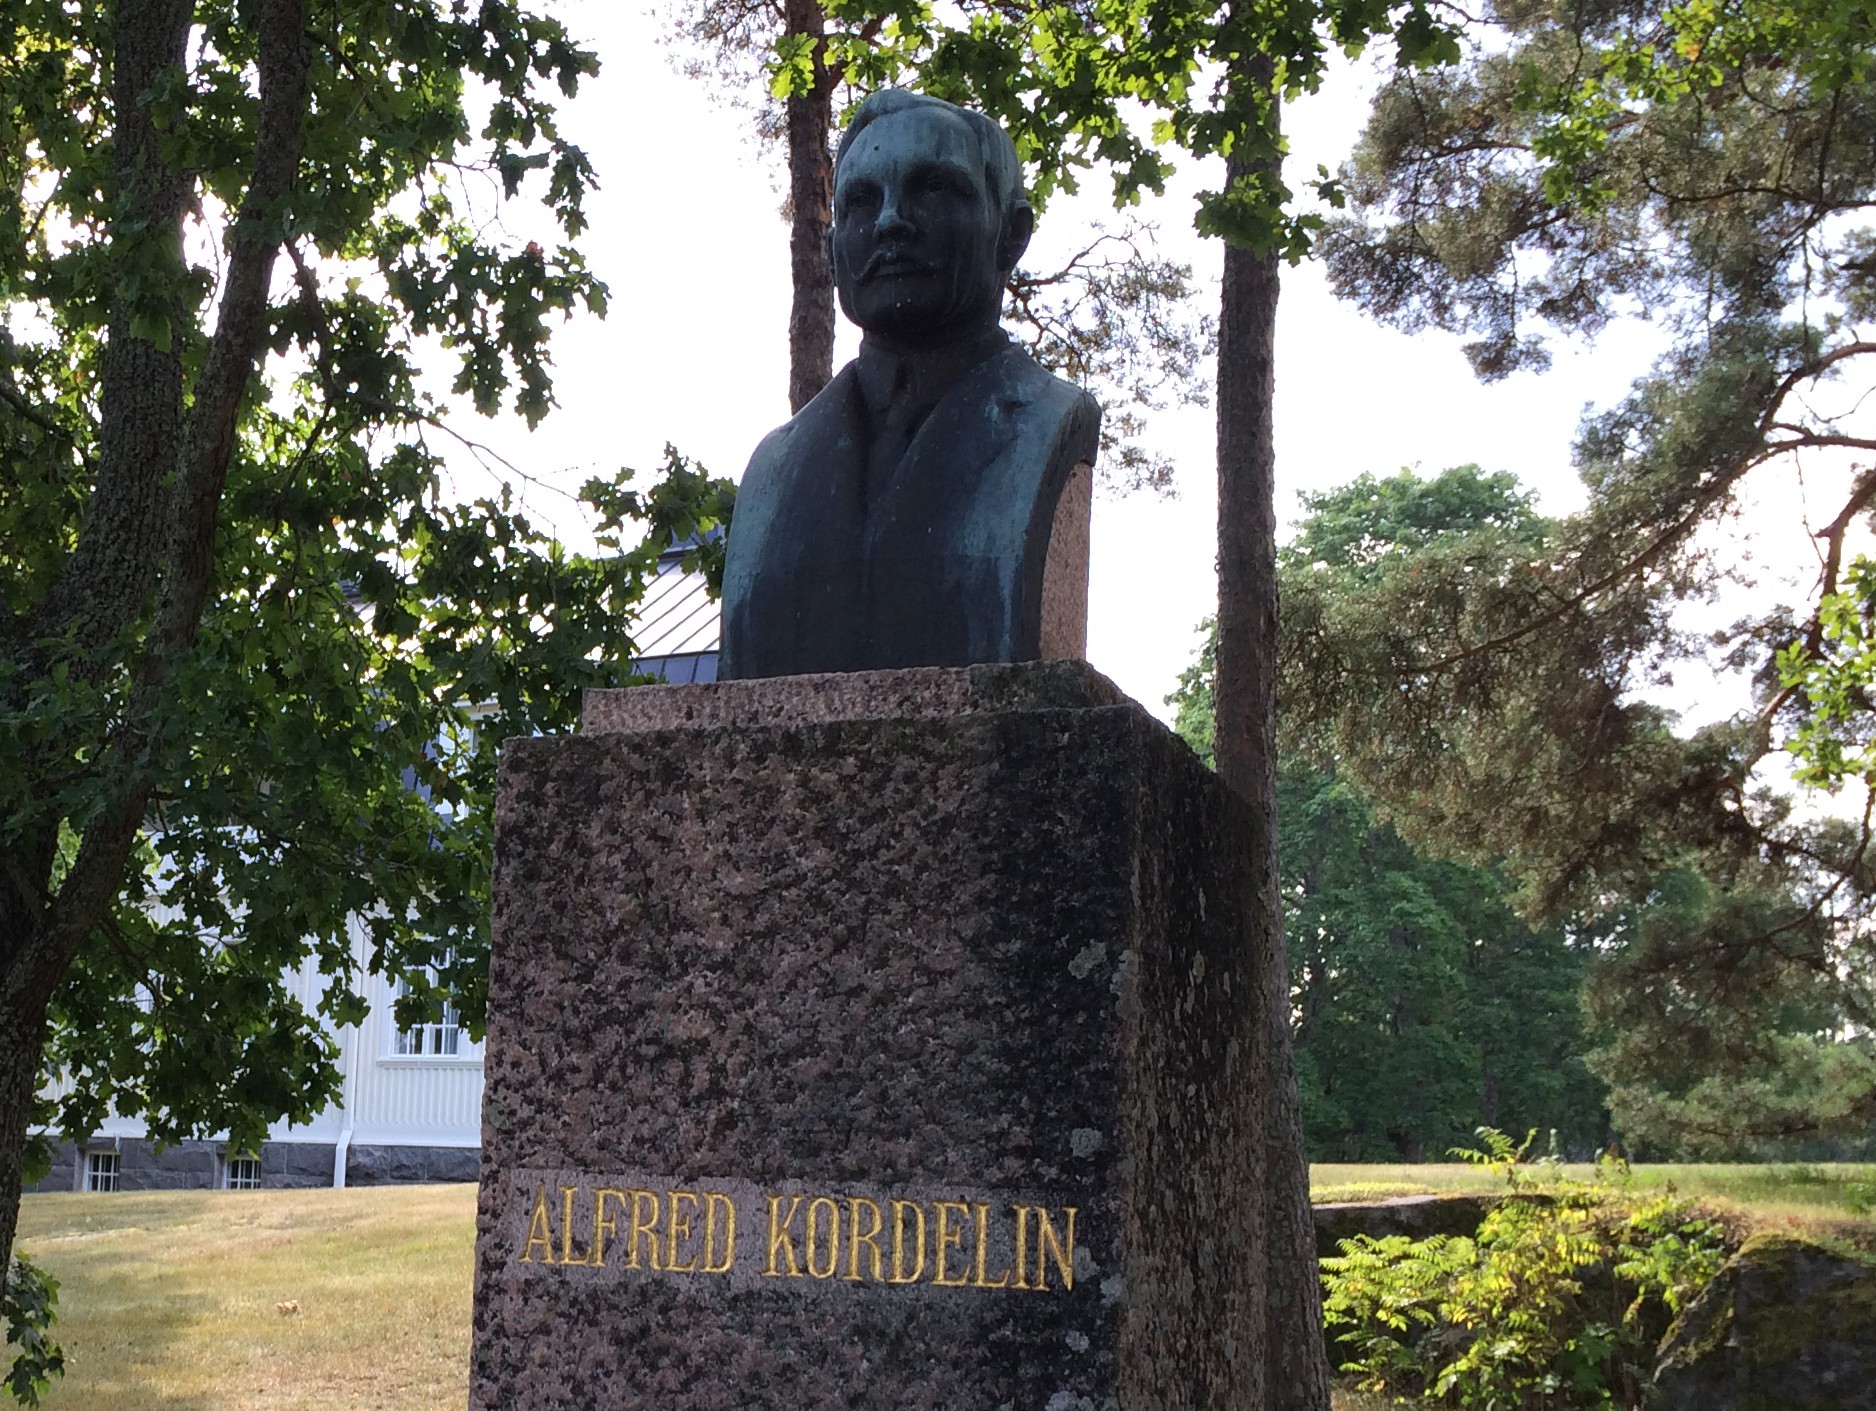 Alfred Kordelinin rintakuva Kultarannan puistossa. Kuva: Tuomas Kuhalainen